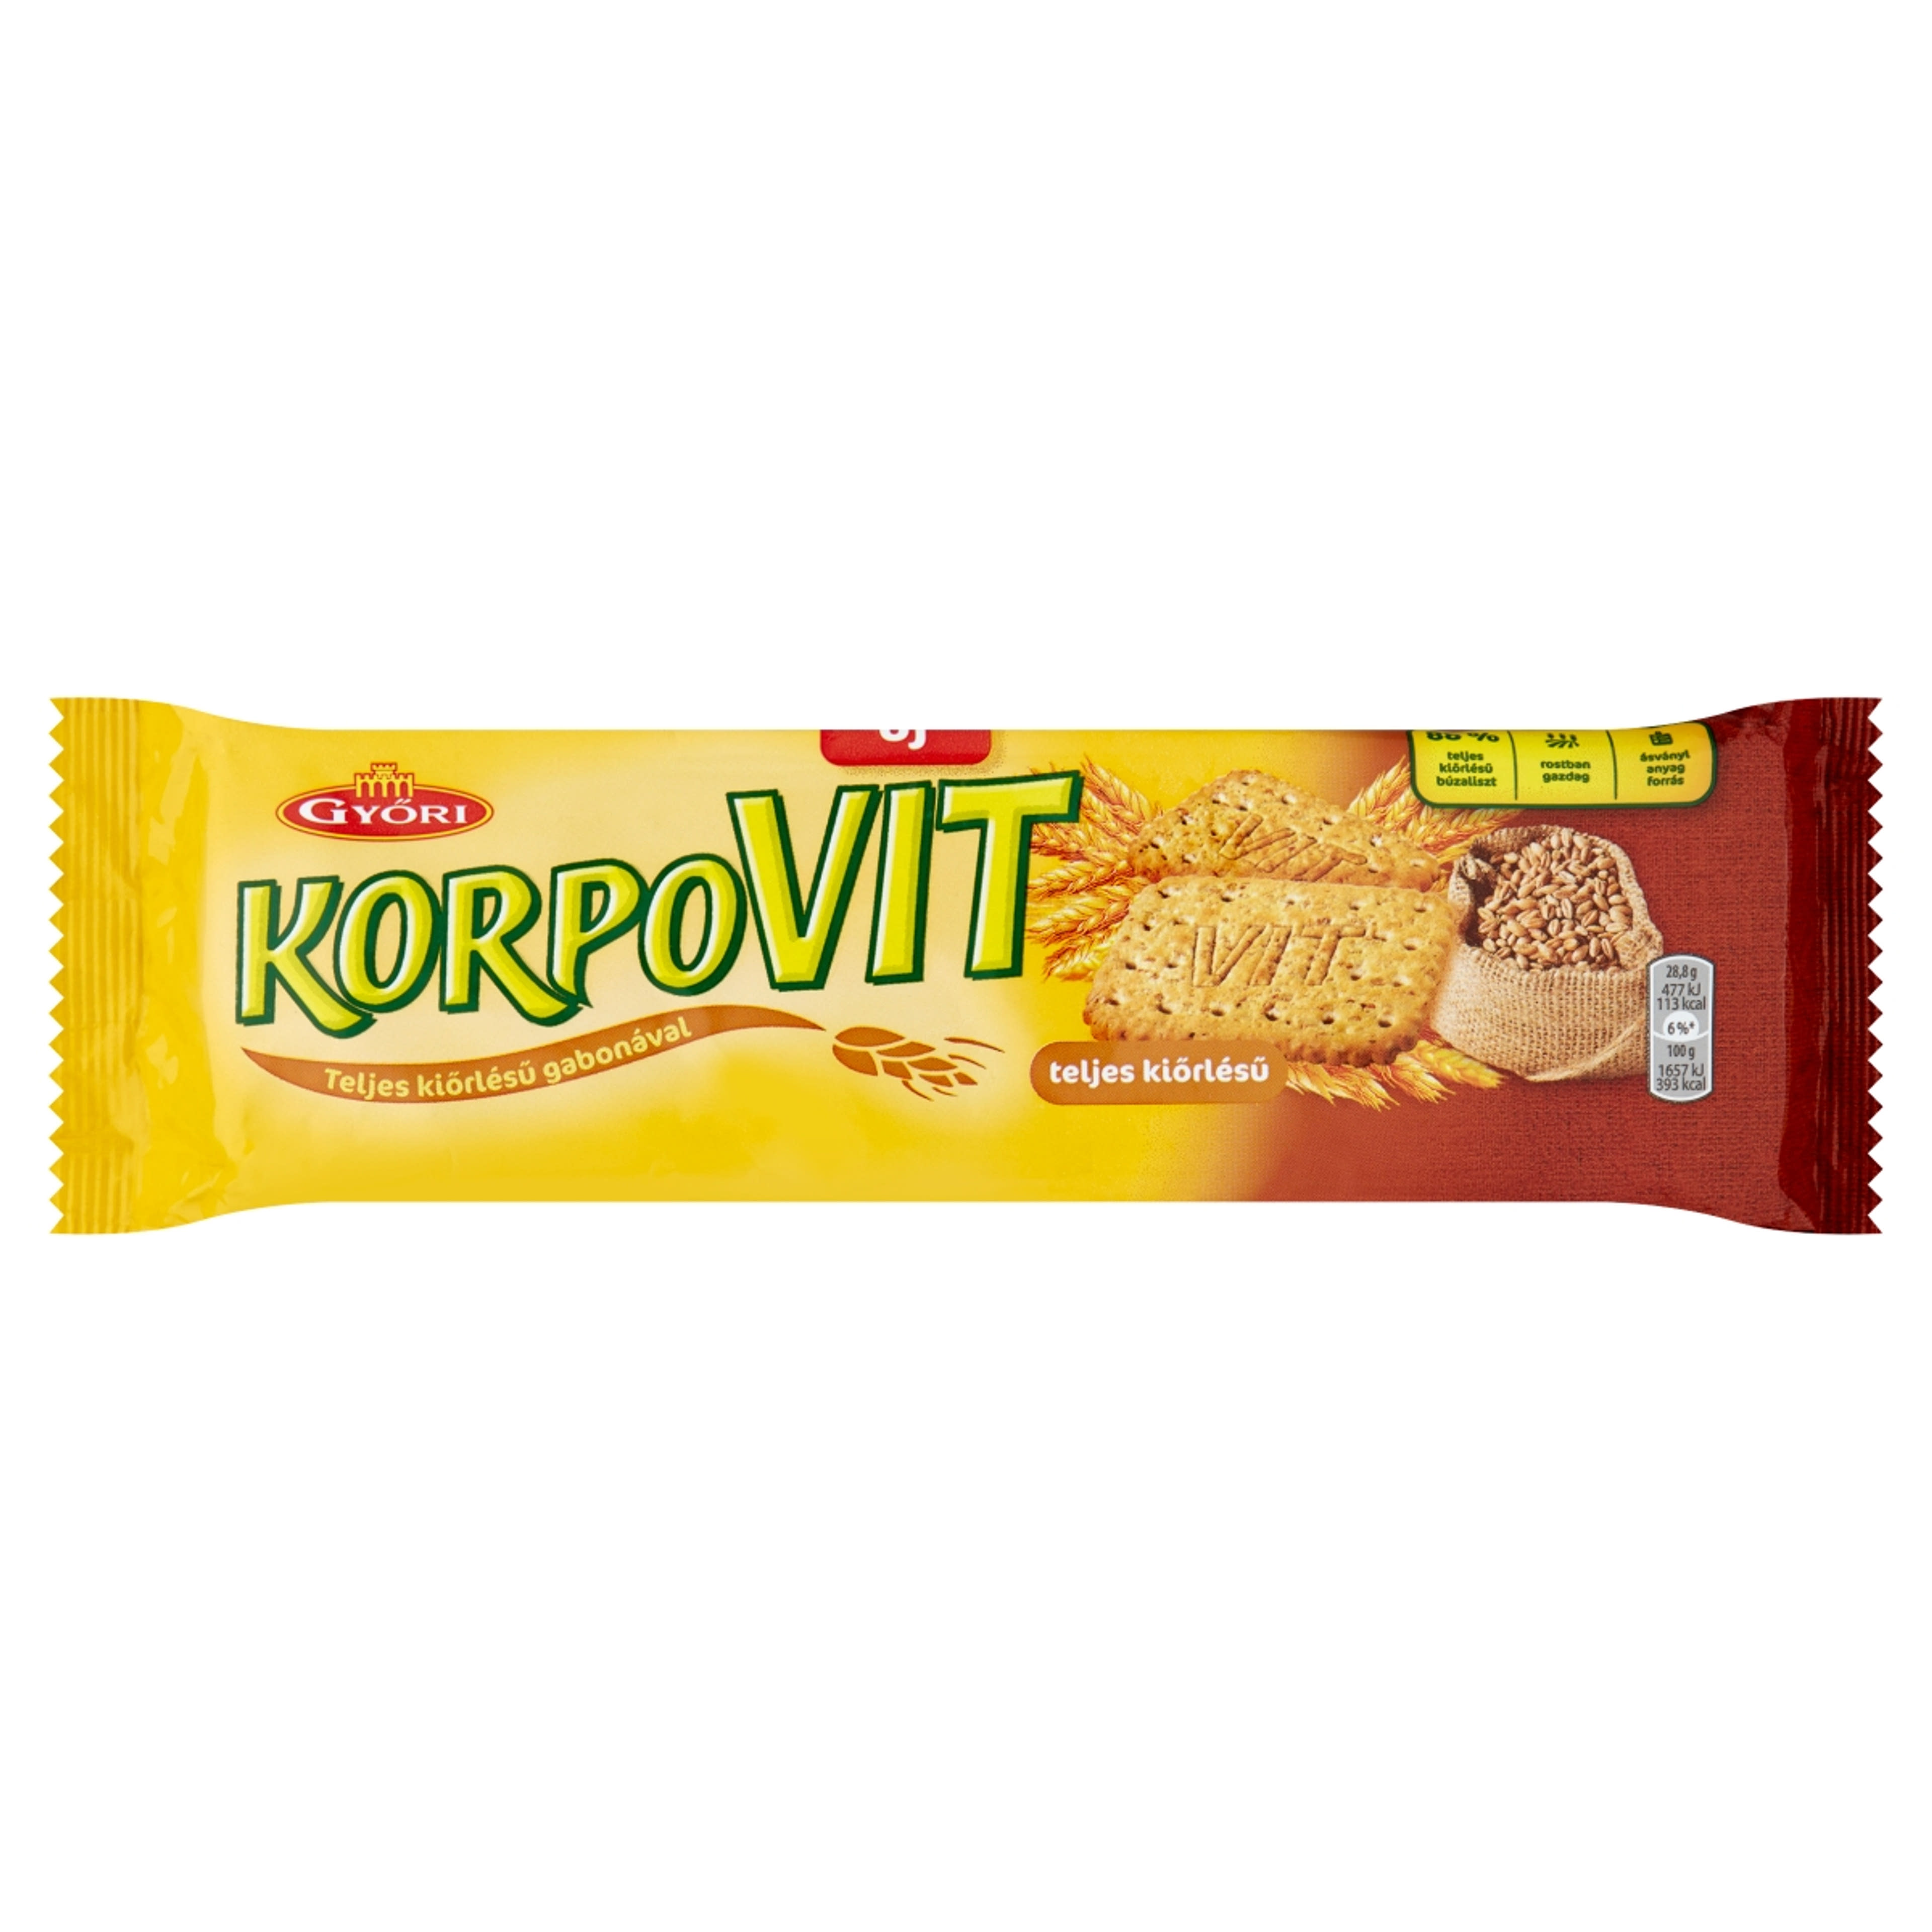 Győri teljes kiörlésű korpovit keksz - 174 g